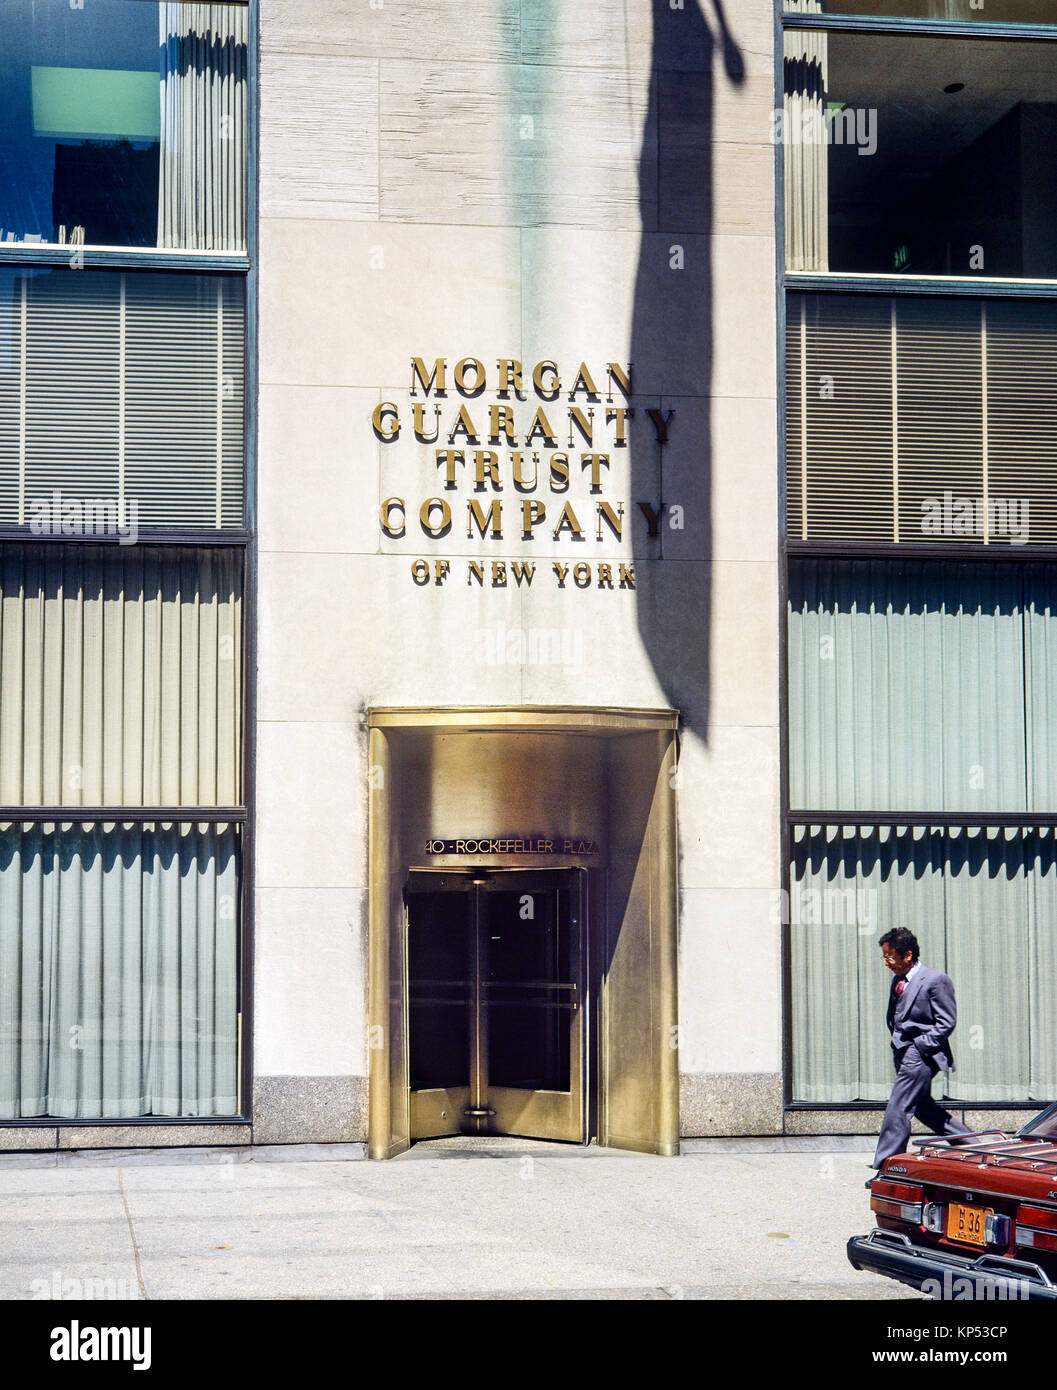 May 1982,New York,Morgan Garanty Trust Company of New York bank entrance,brass revolving door,one man,Manhattan,New york City,NY,NYC,USA, Stock Photo